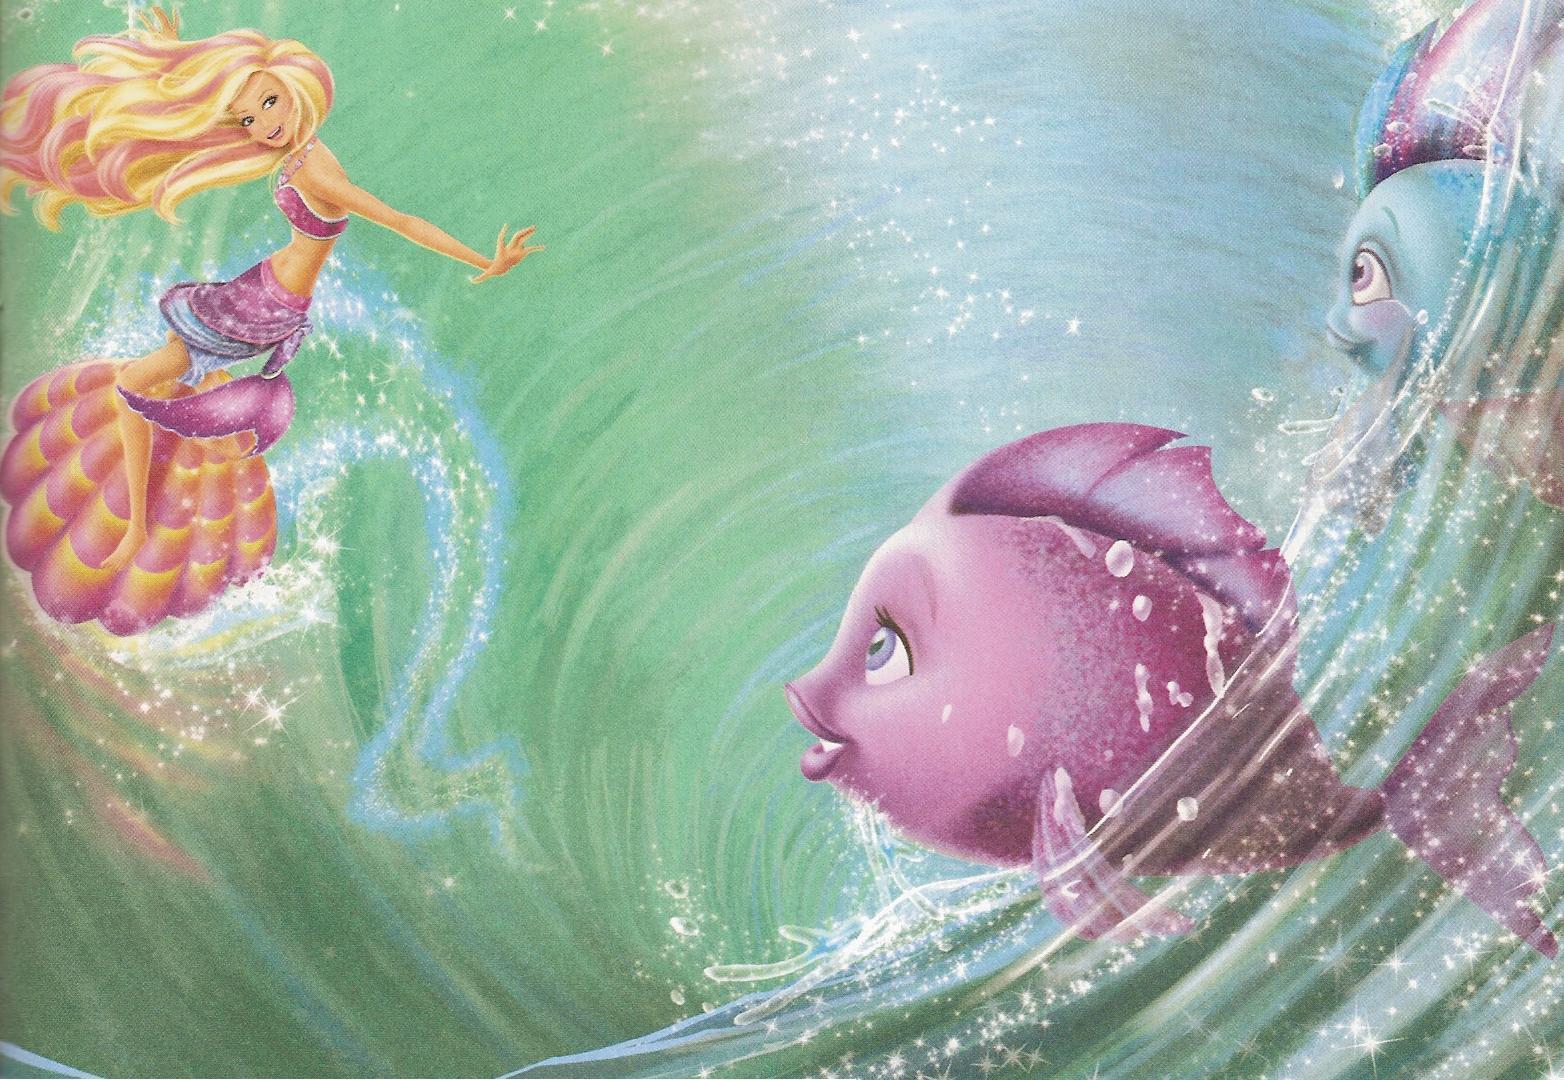 Barbie In A Mermaid Tale wallpapers.